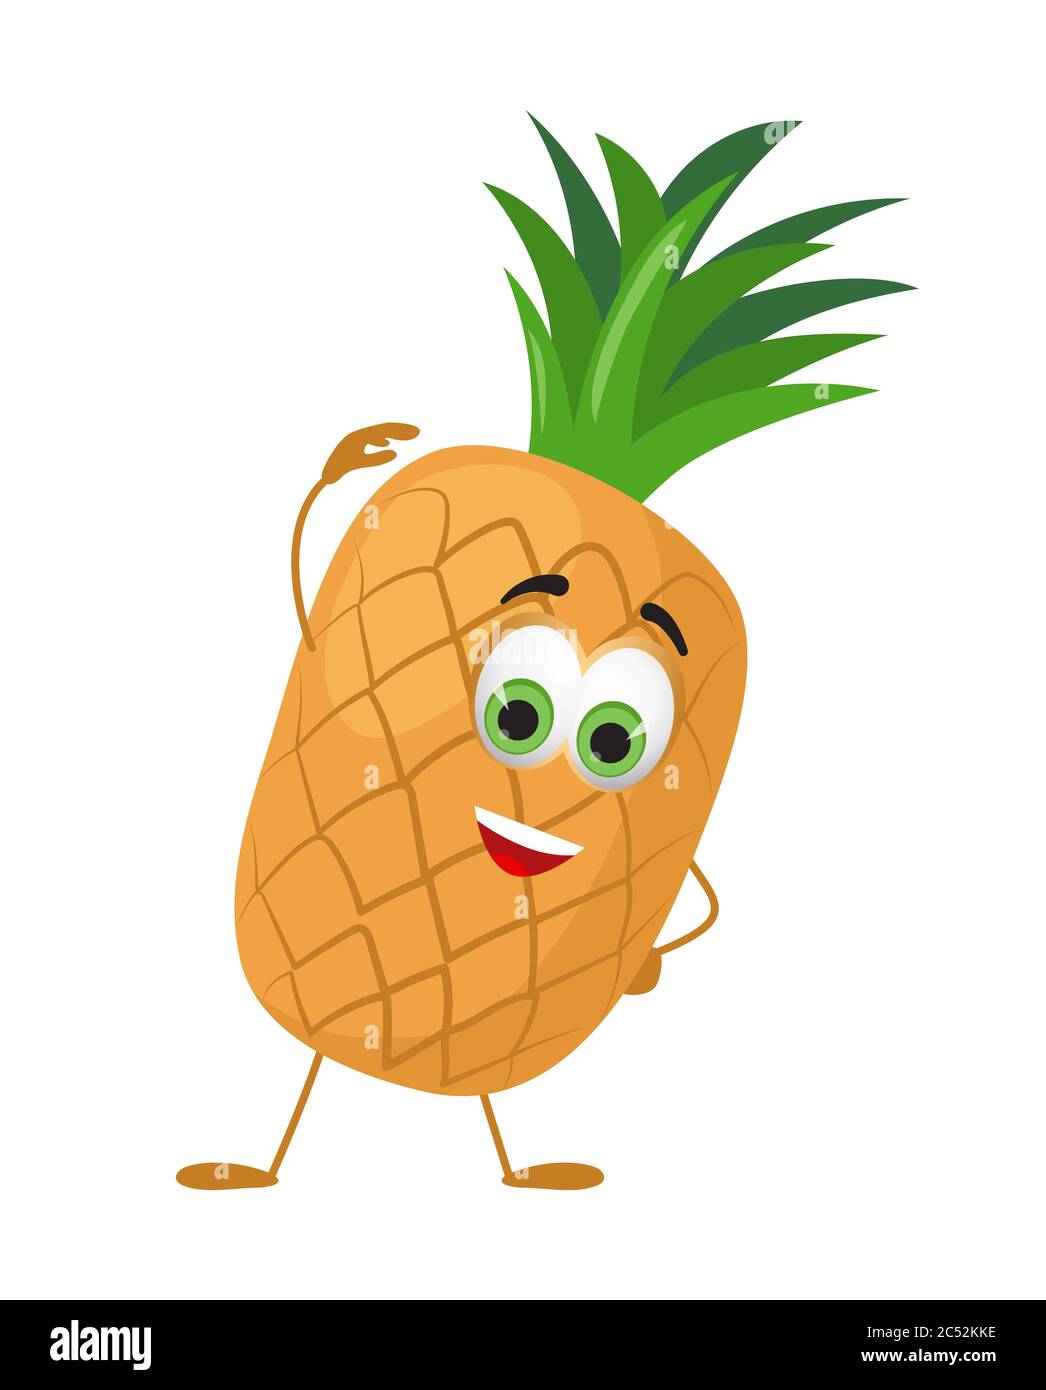 Ananas drôle avec les yeux. Dessin animé drôle de fruits personnages illustration vectorielle plate Illustration de Vecteur